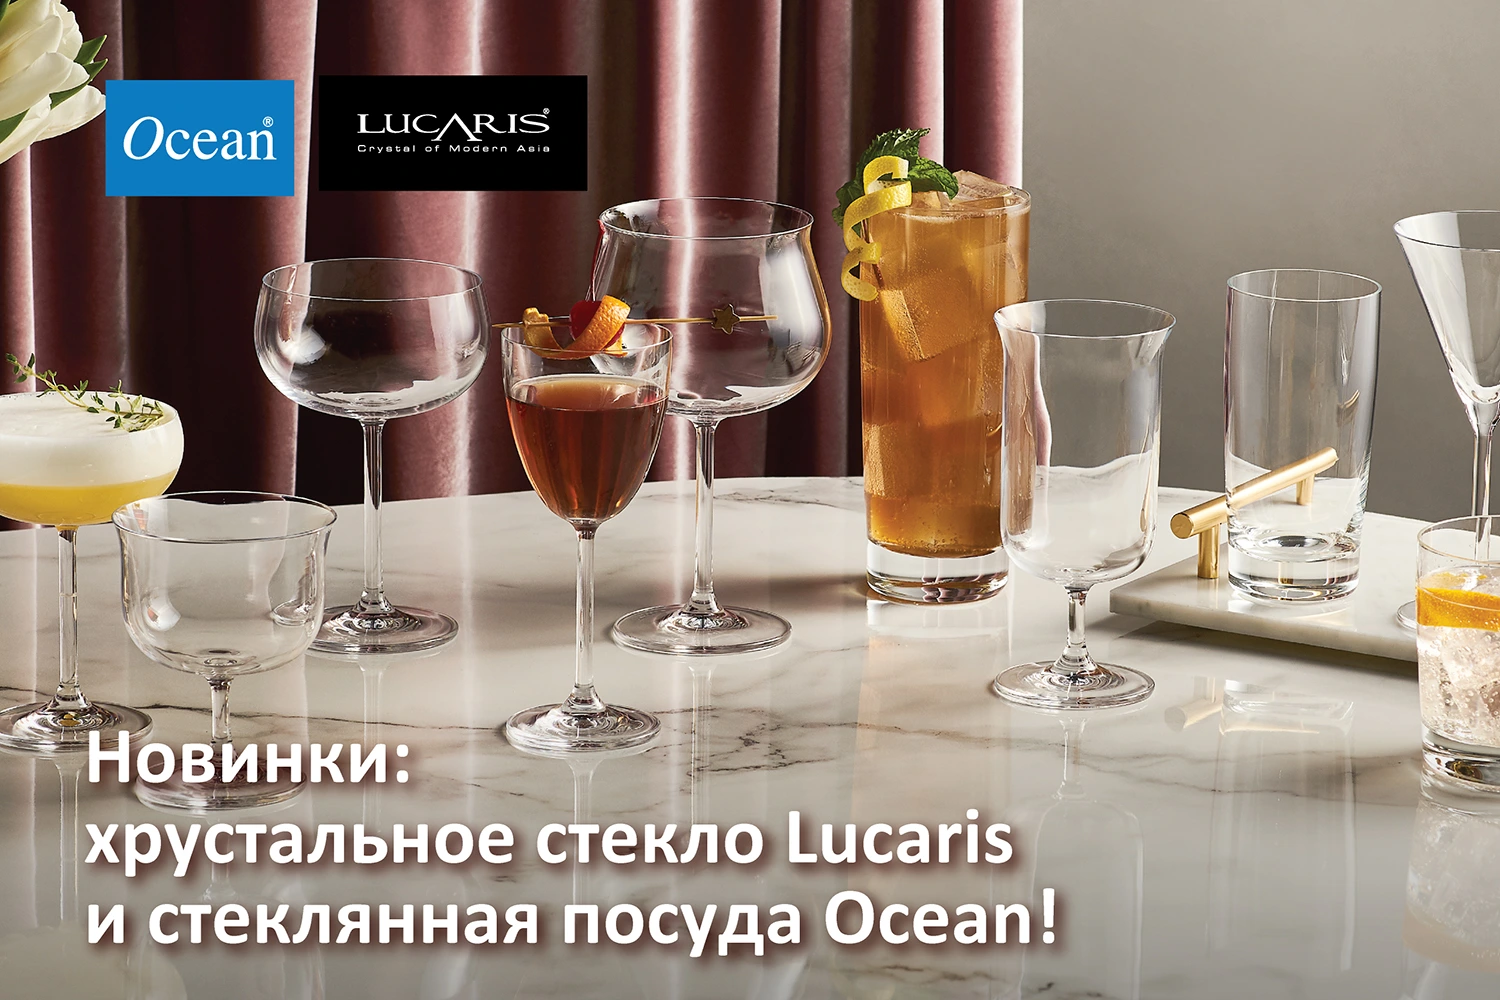 Новинки: хрустальное стекло Lucaris и стеклянная посуда Ocean!